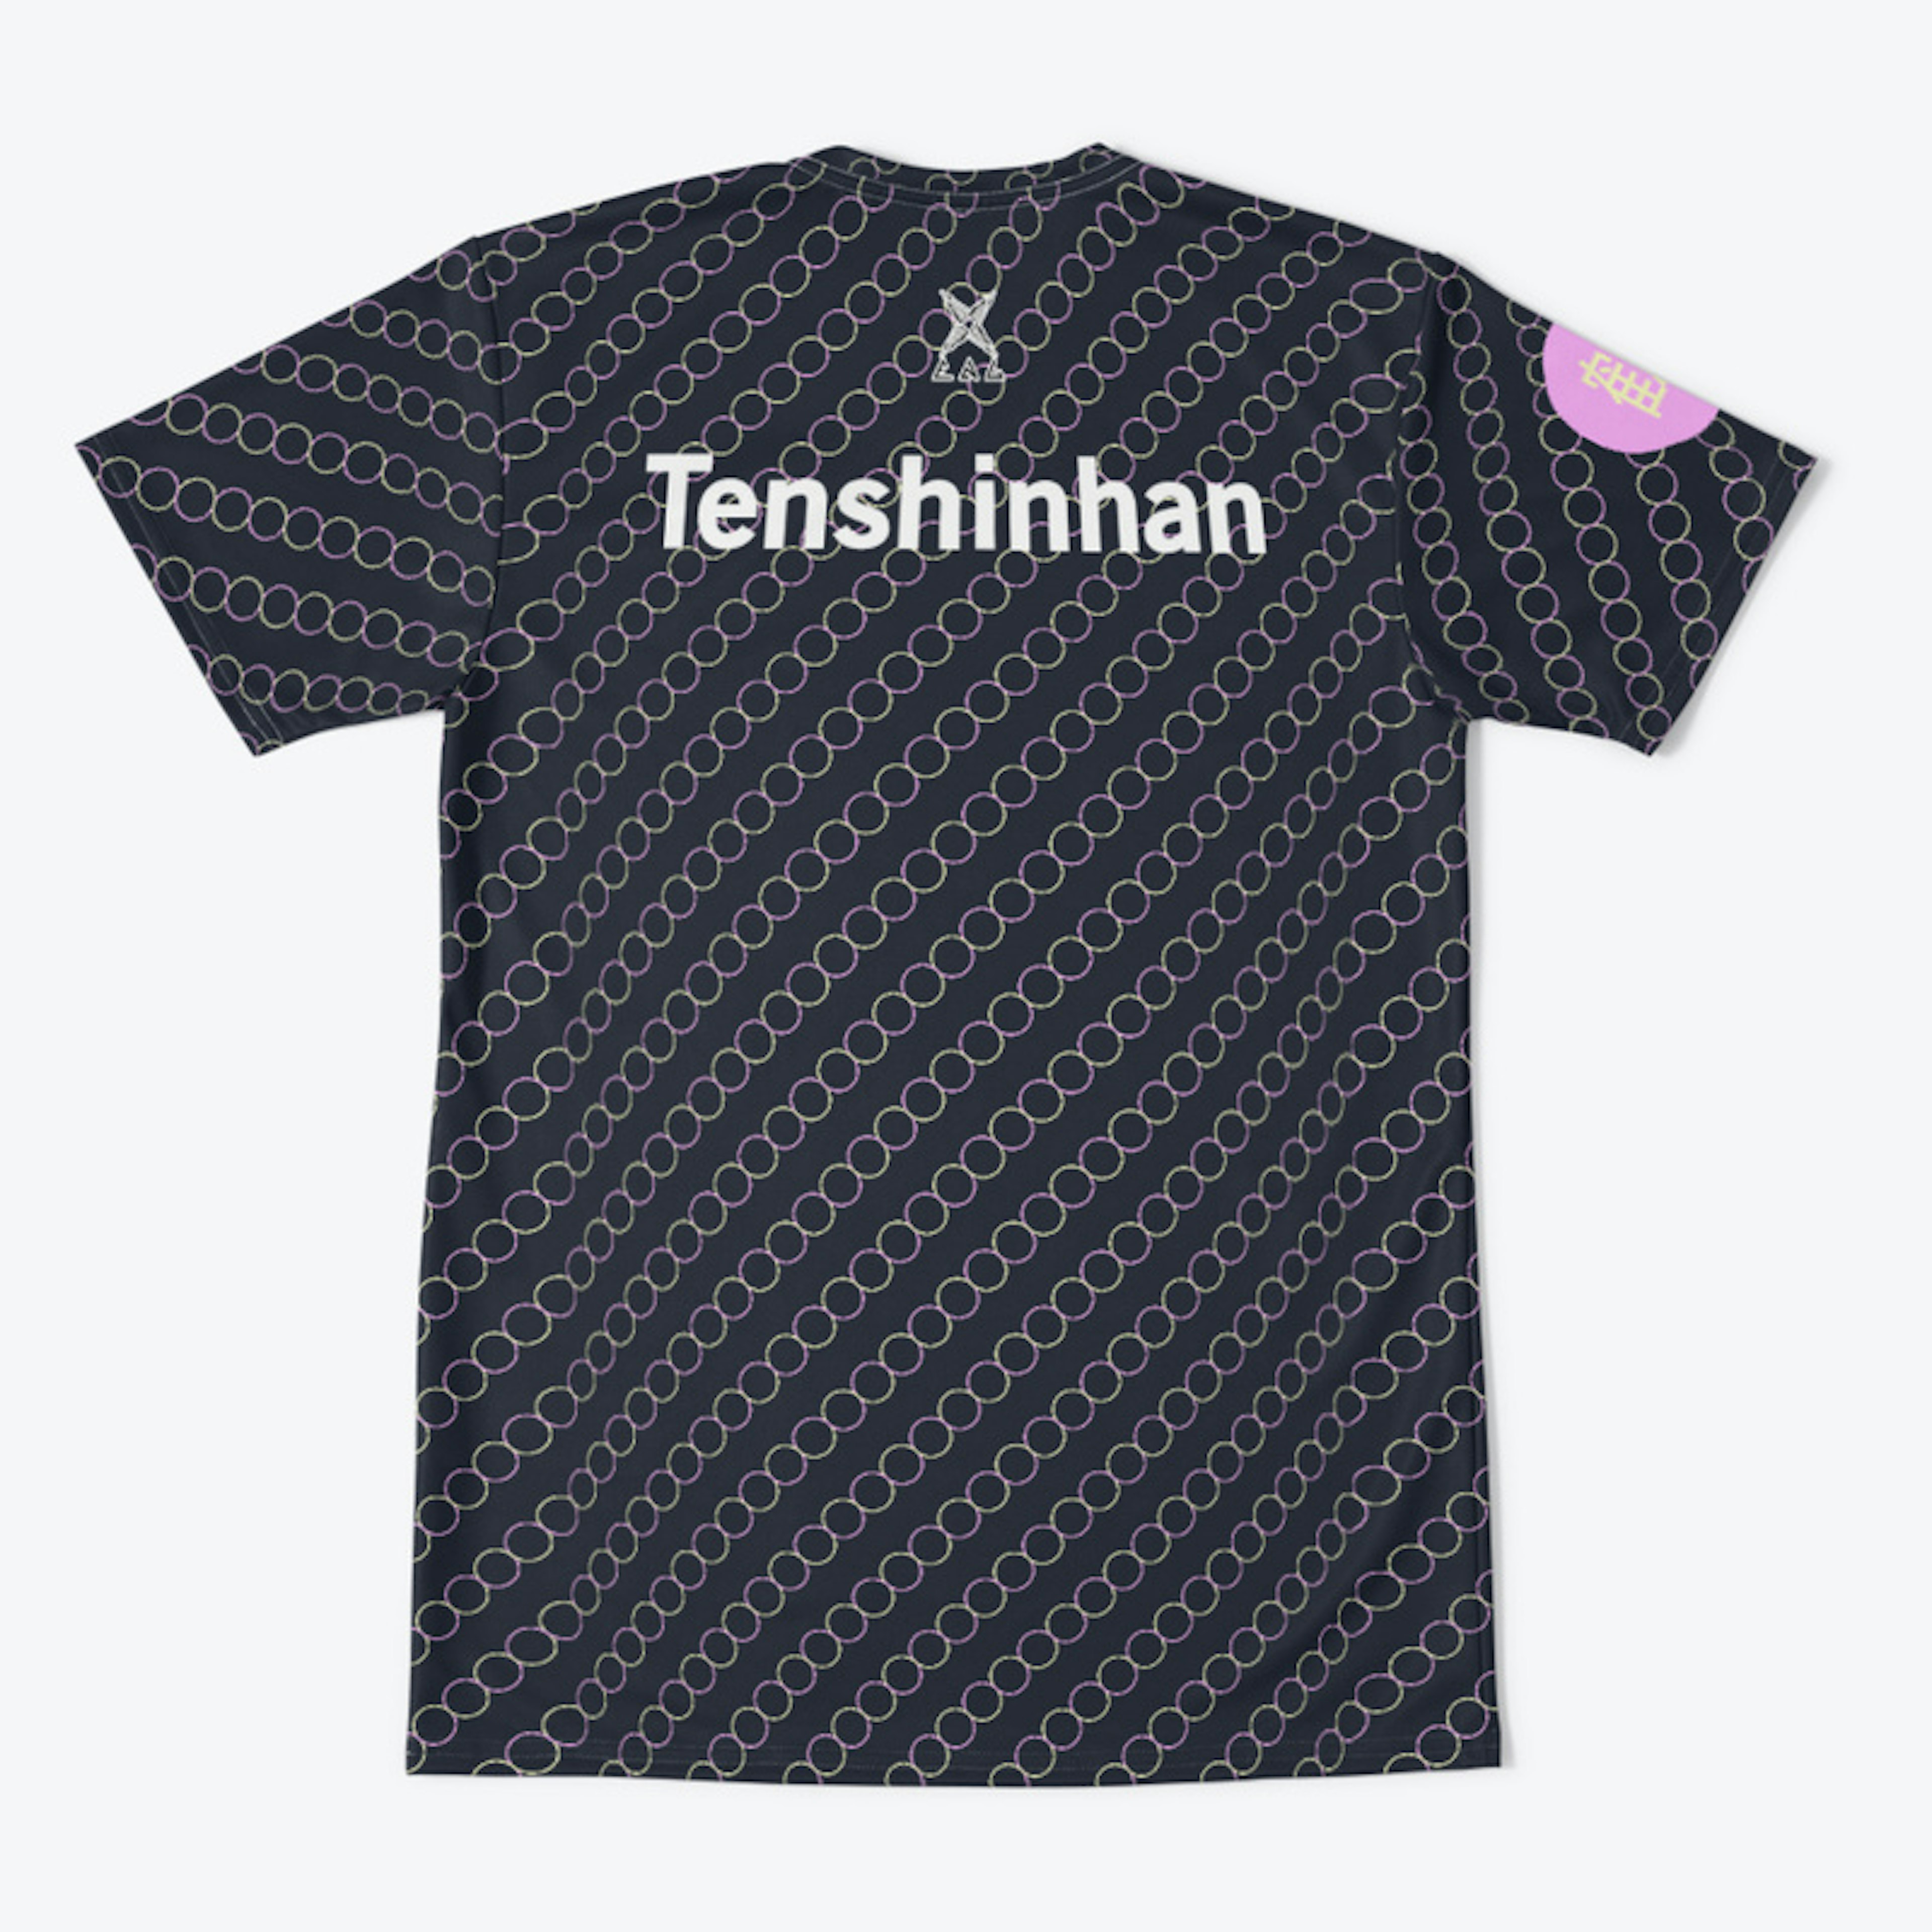 Tenshinhan